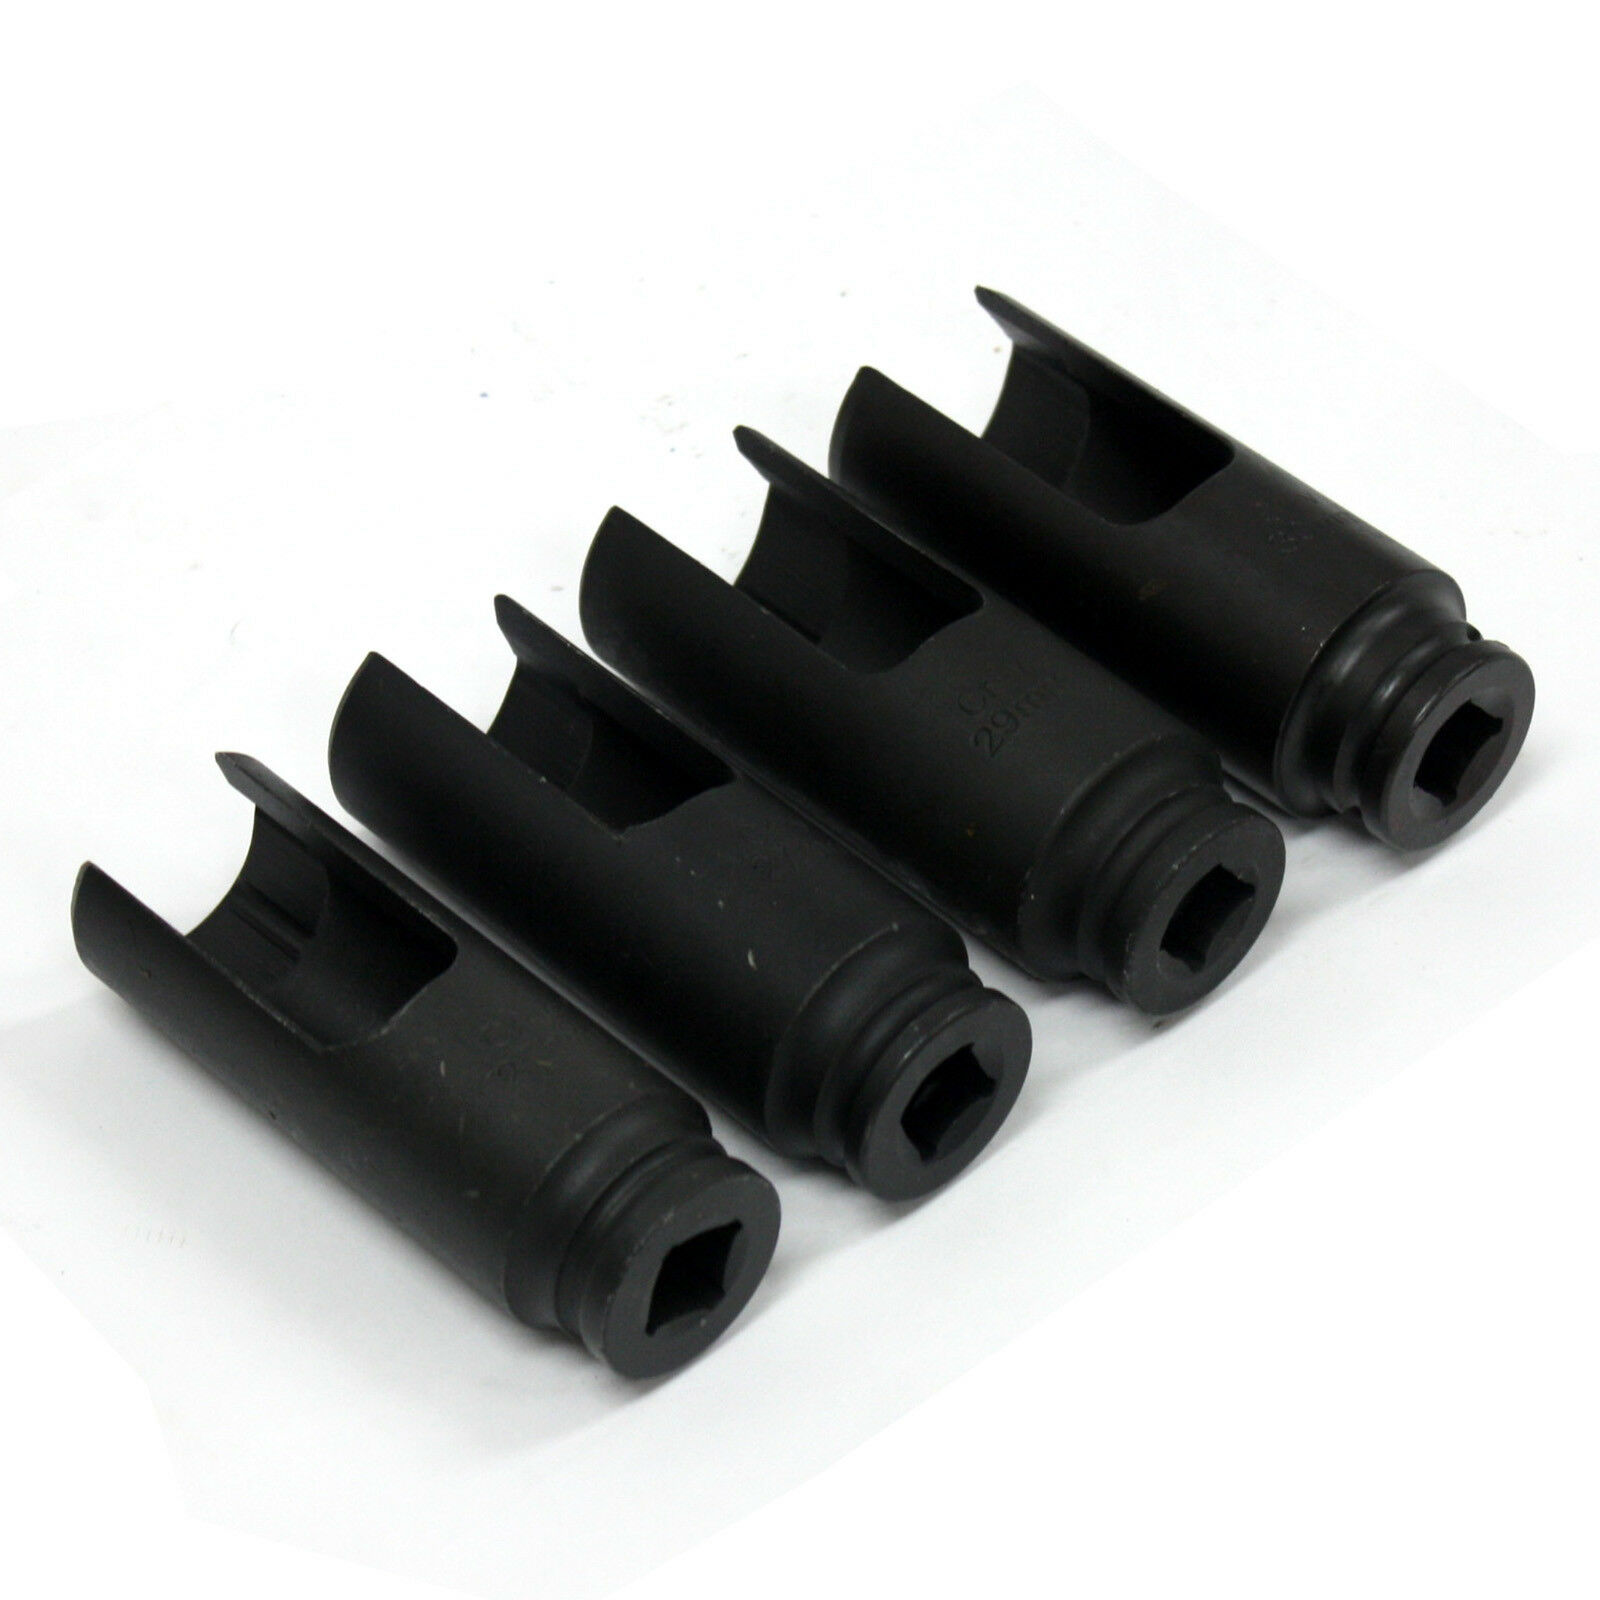 4pc Diesel Injector Nozzle Socket Set 1//2/" Drive Siemens Bosch 25 27 29 30mm